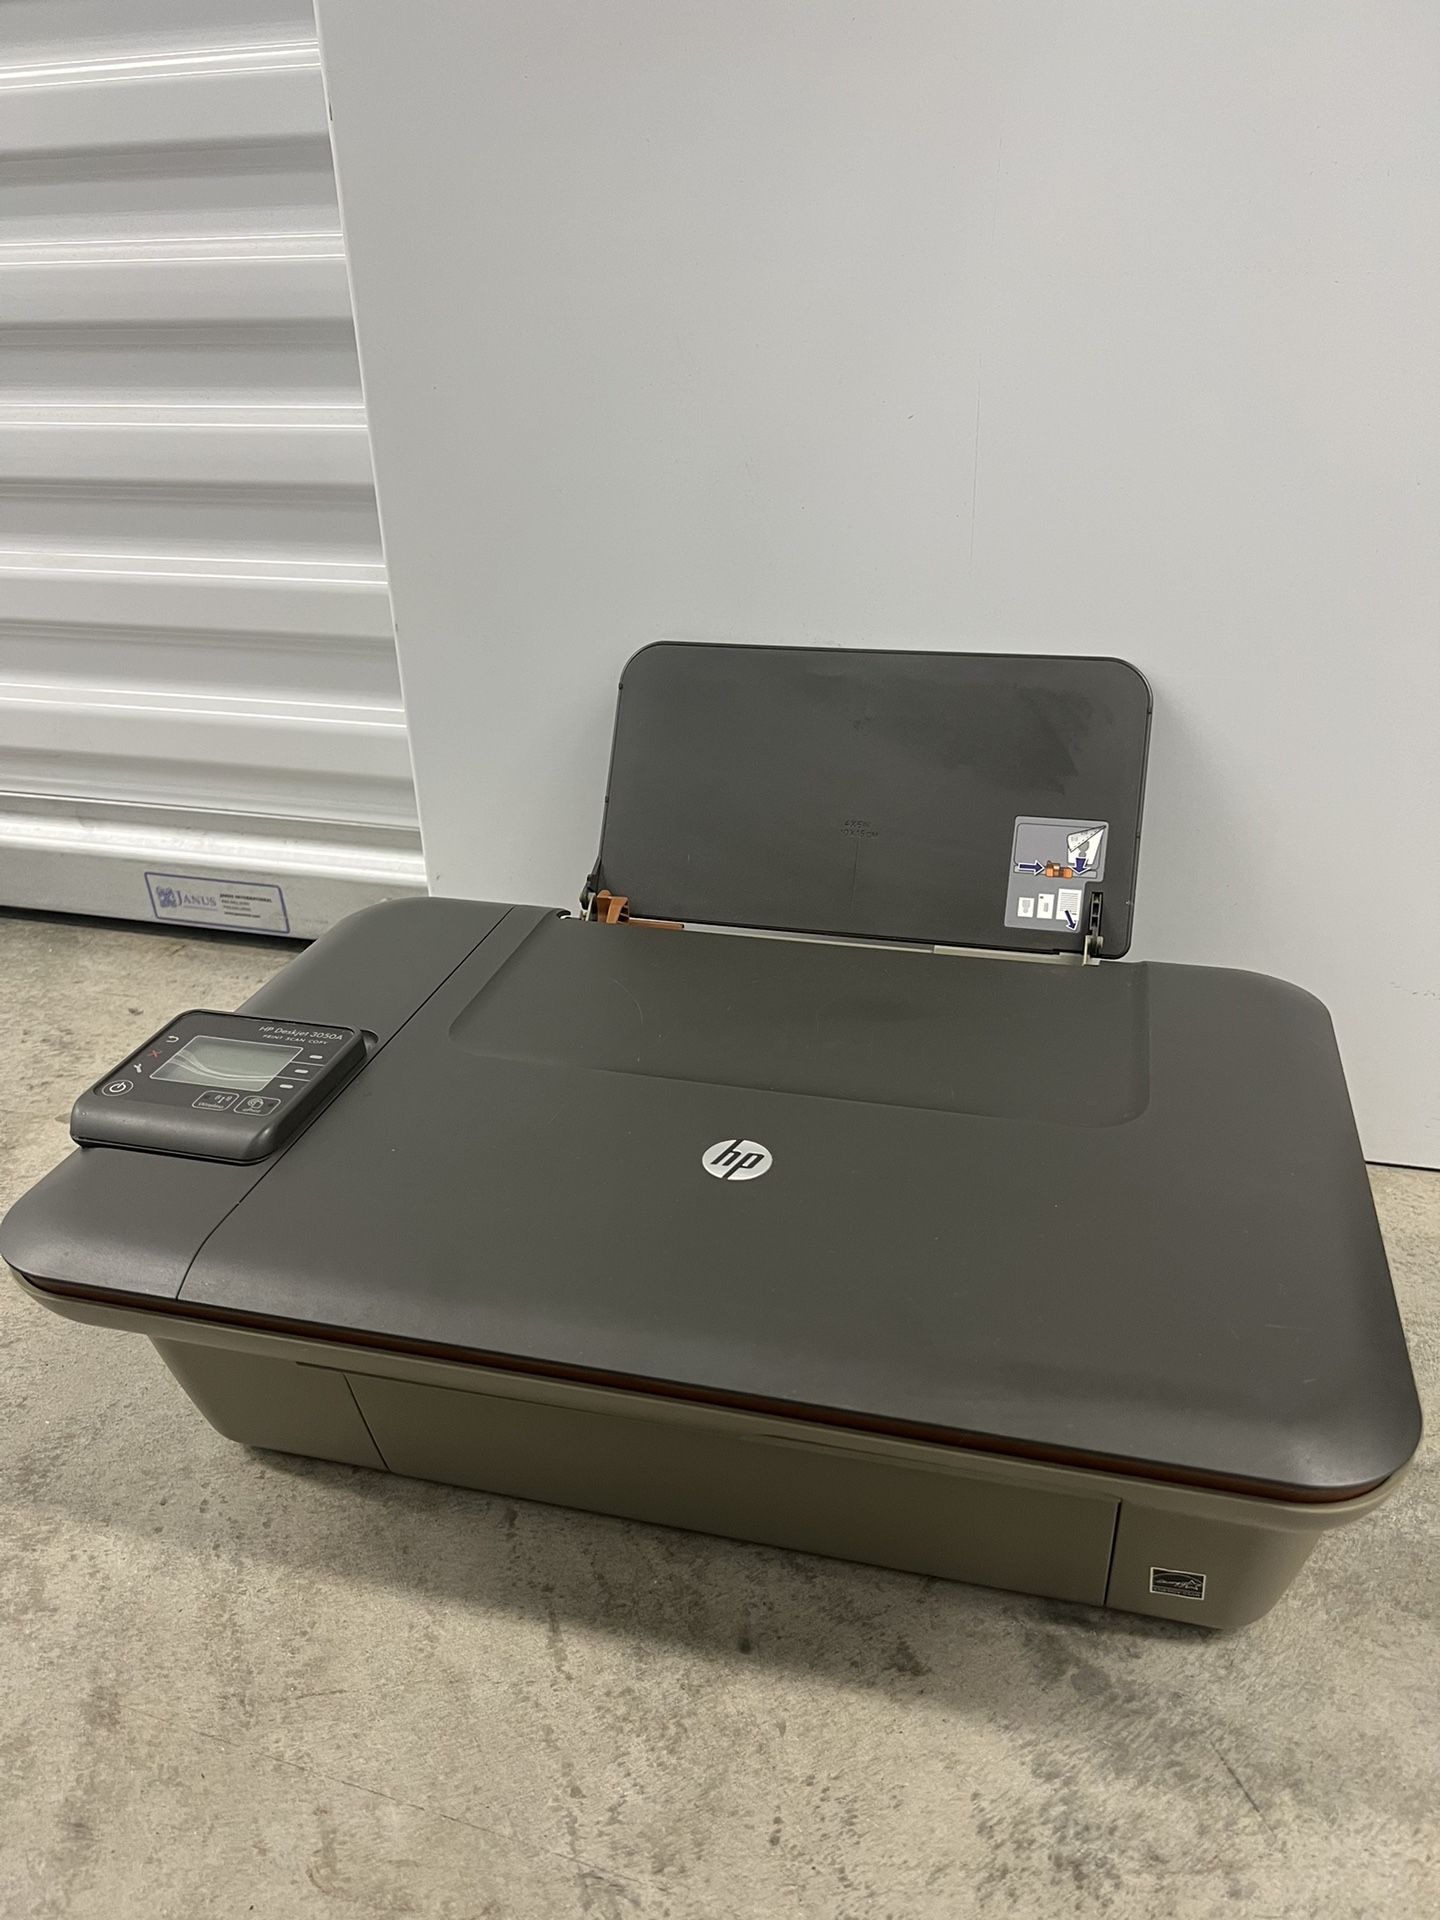 session galning Højttaler HP Printer Deskjet 3050A for Sale in Miami, FL - OfferUp